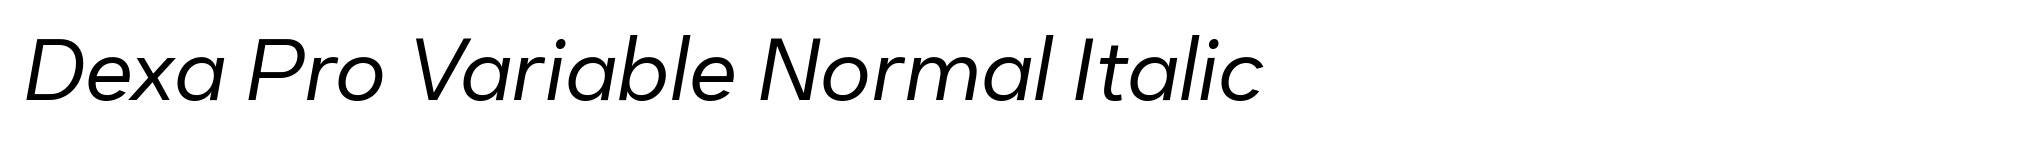 Dexa Pro Variable Normal Italic image